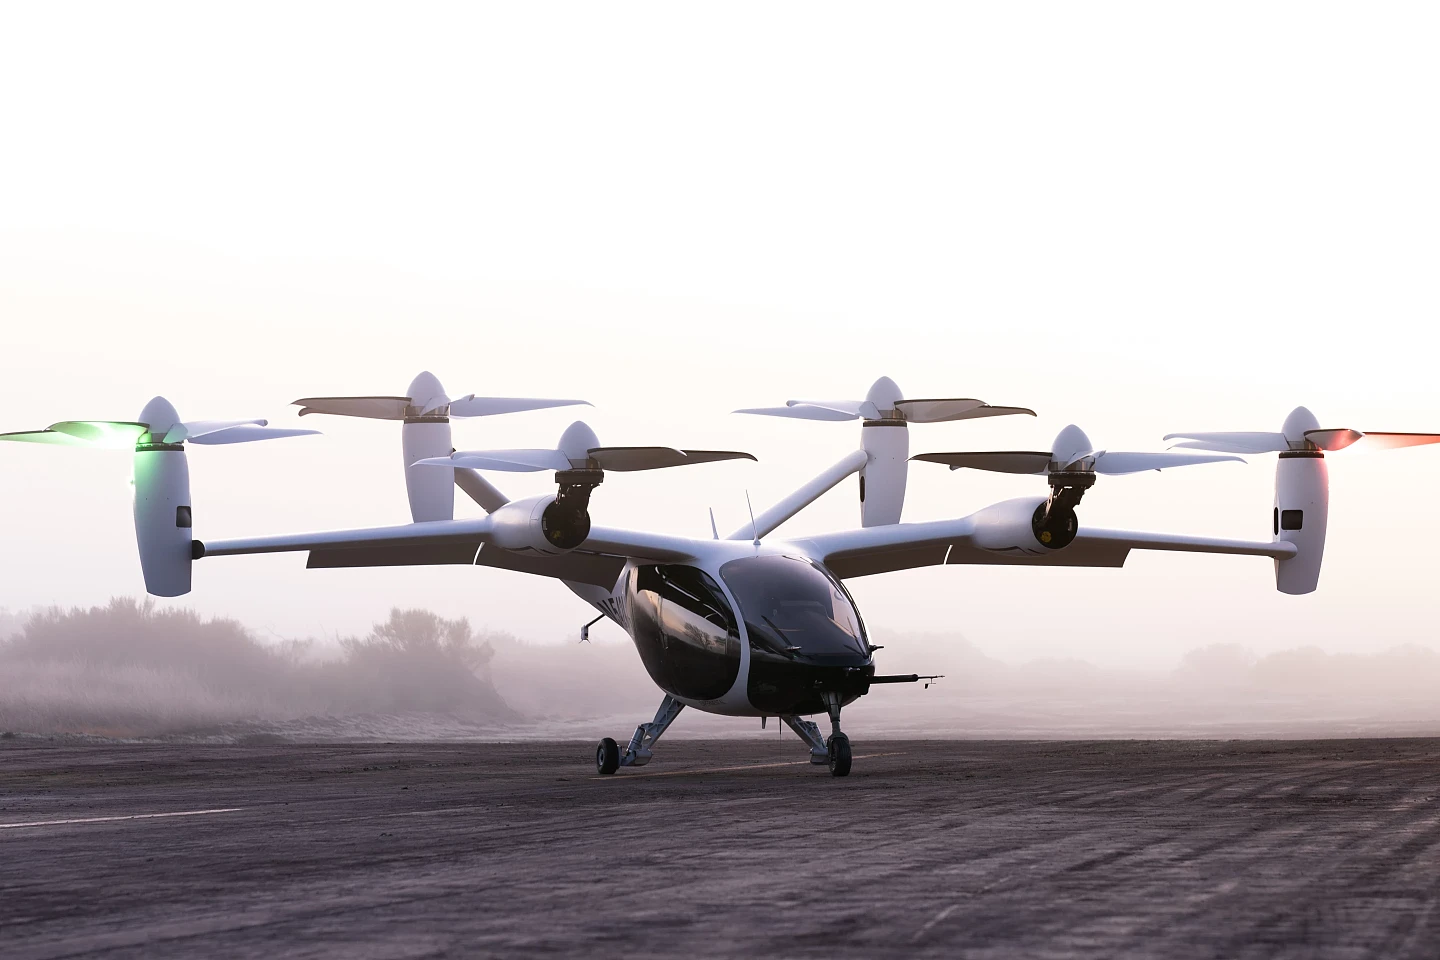 Joby发布eVTOL完整飞行轮廓视频并碳信用交易系统计划 - 1